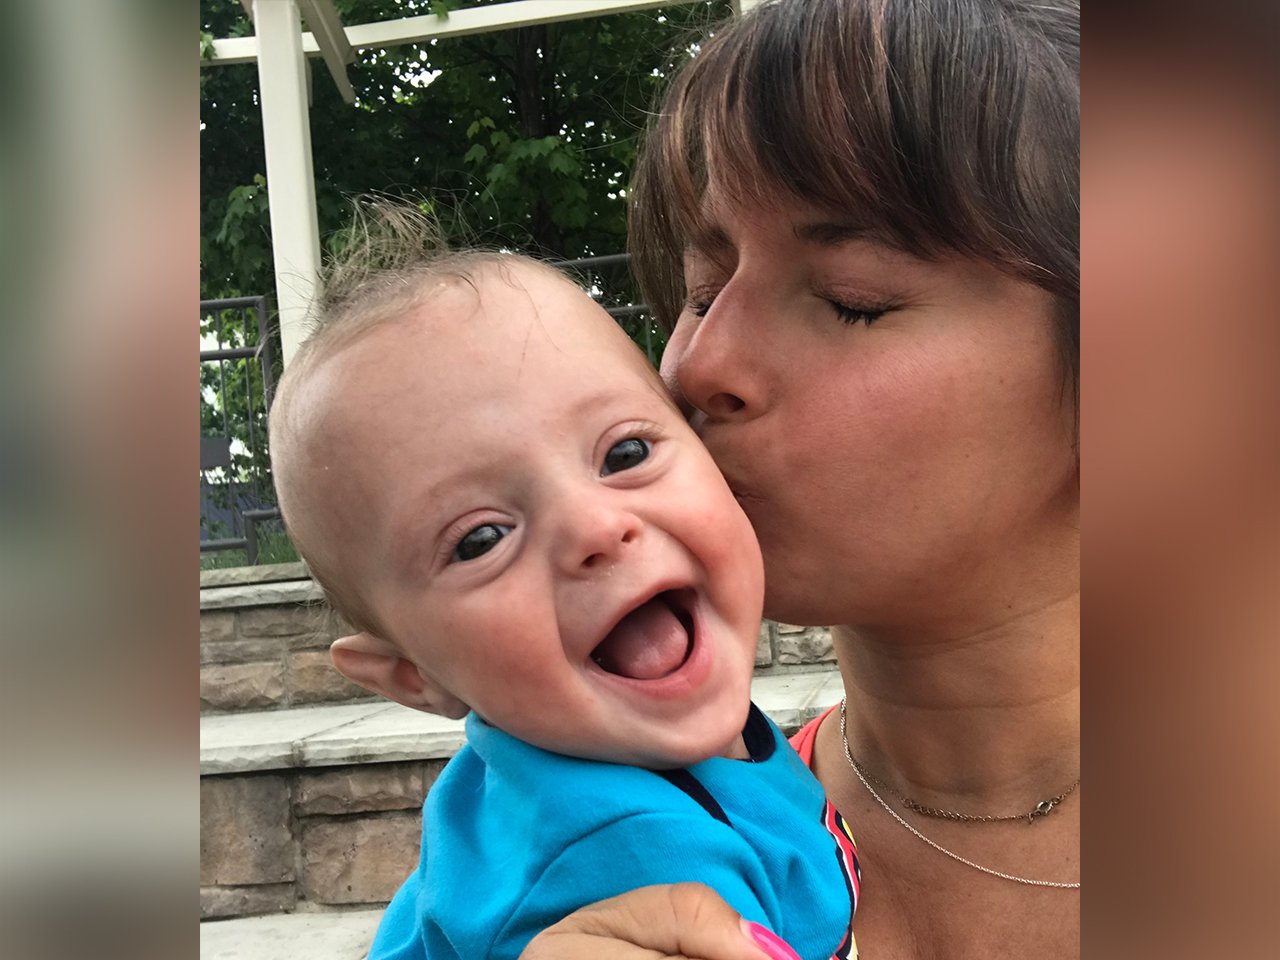 Autor küssen Sohn nach dem Verlust eines Zwillings im Mutterleib